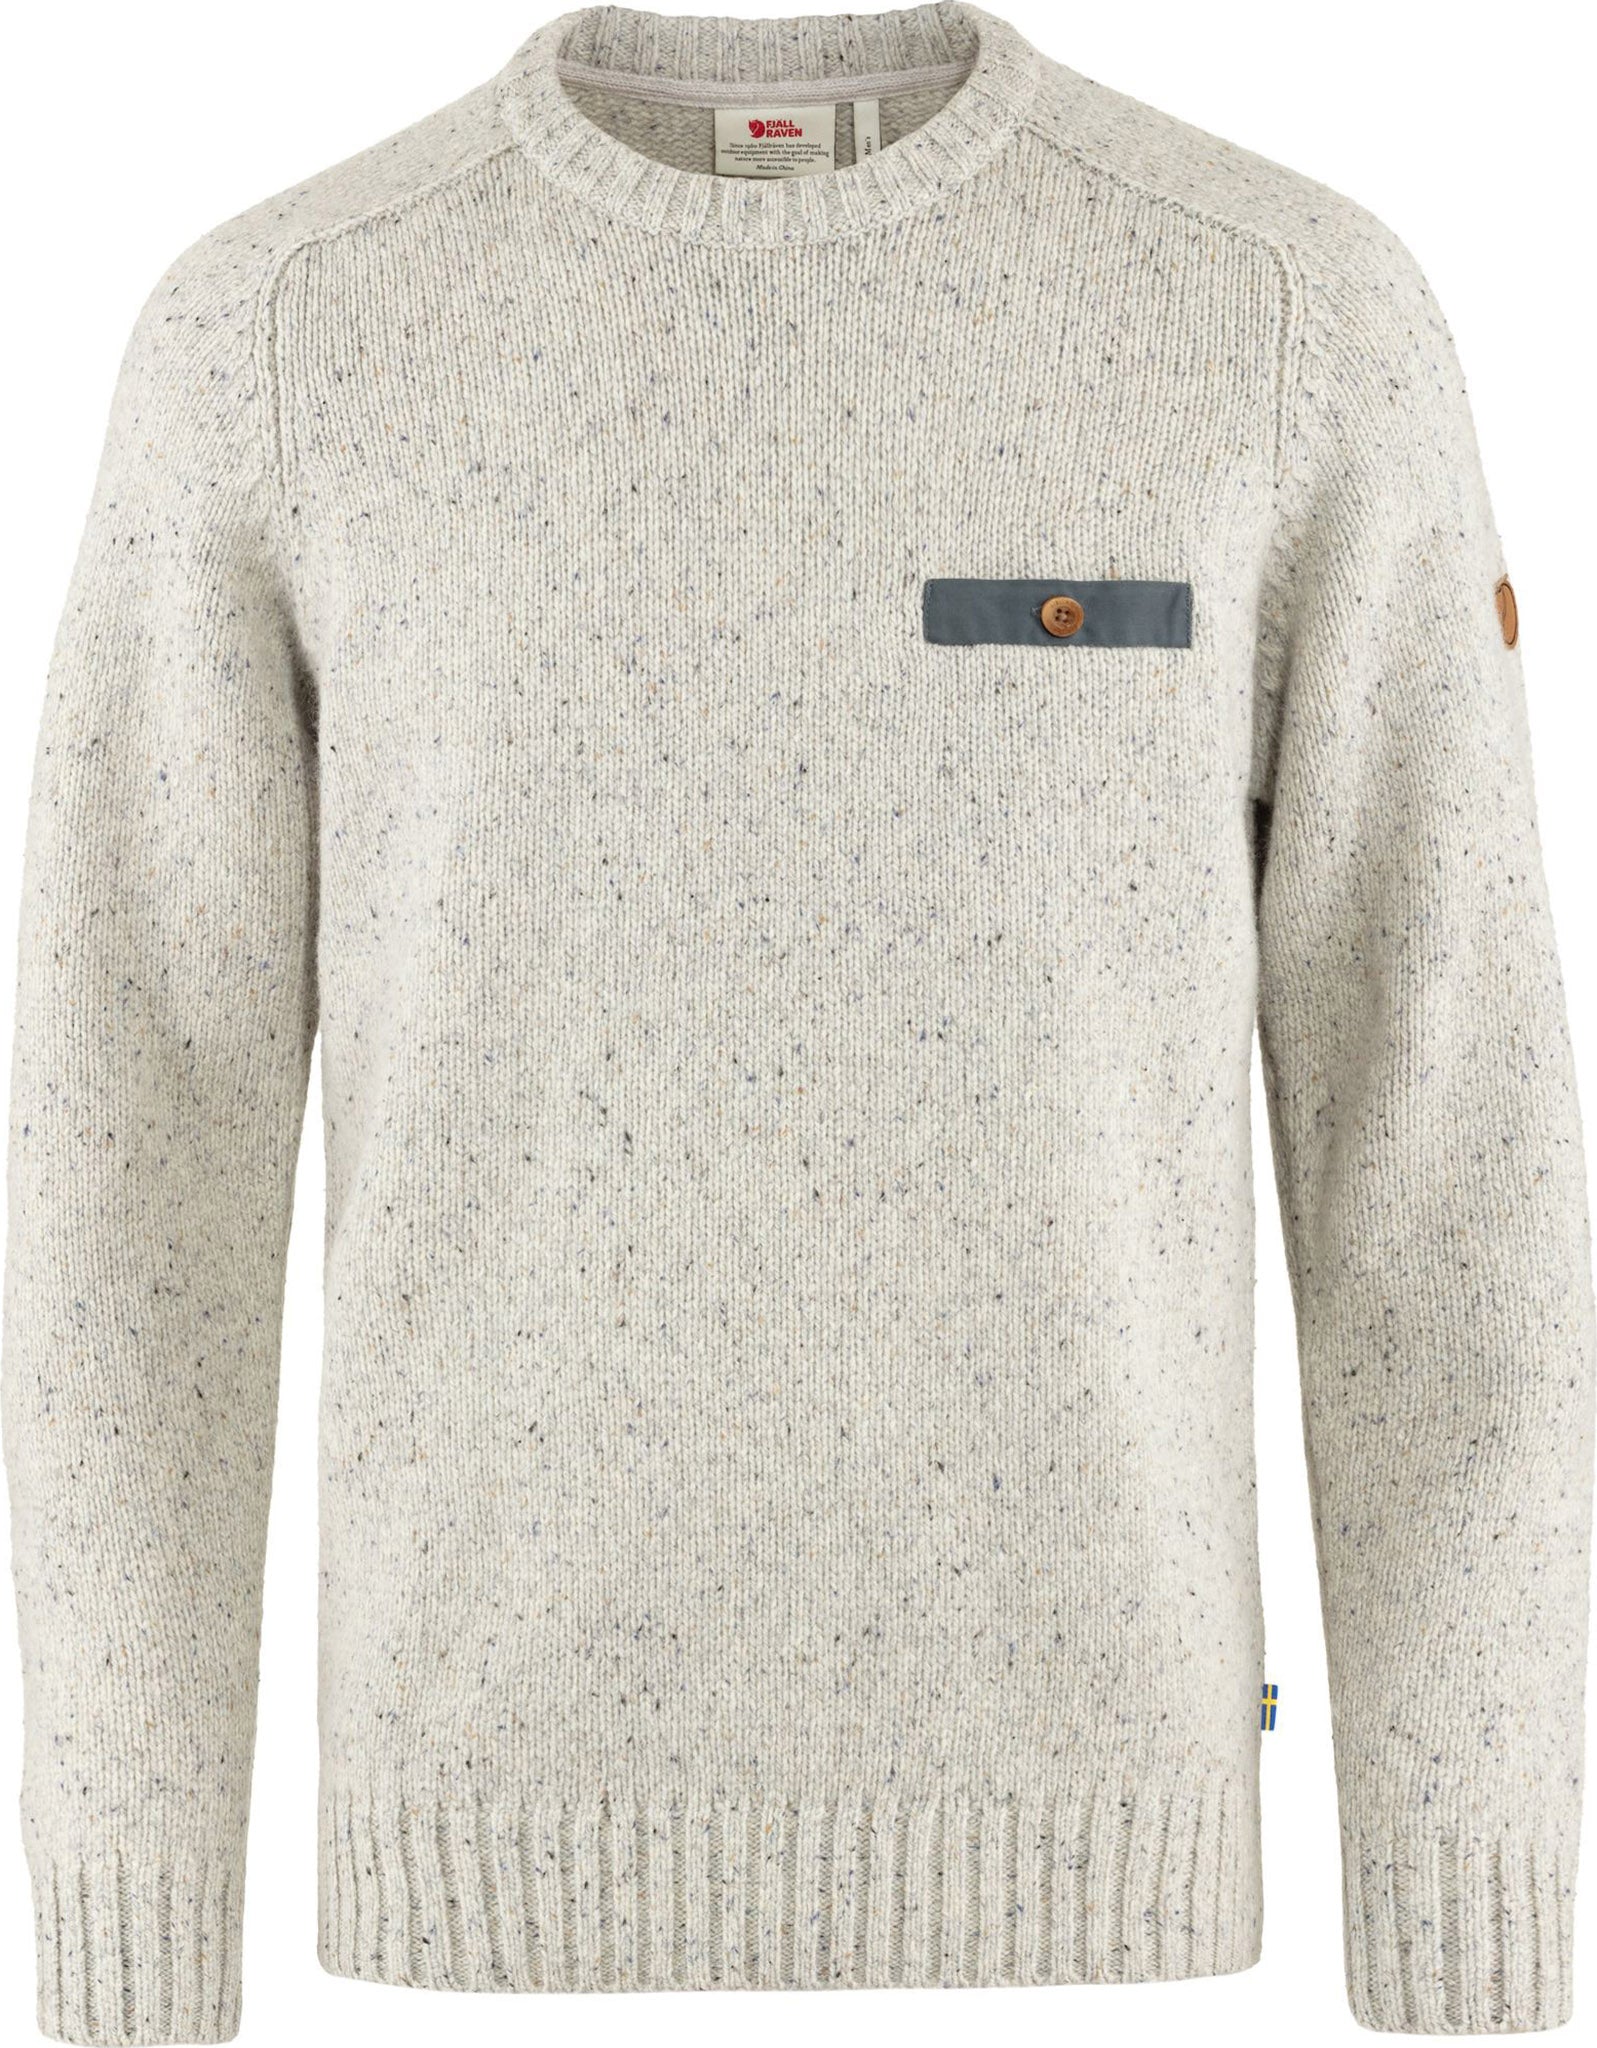 Fjällräven Lada Round-neck Sweater - Men's